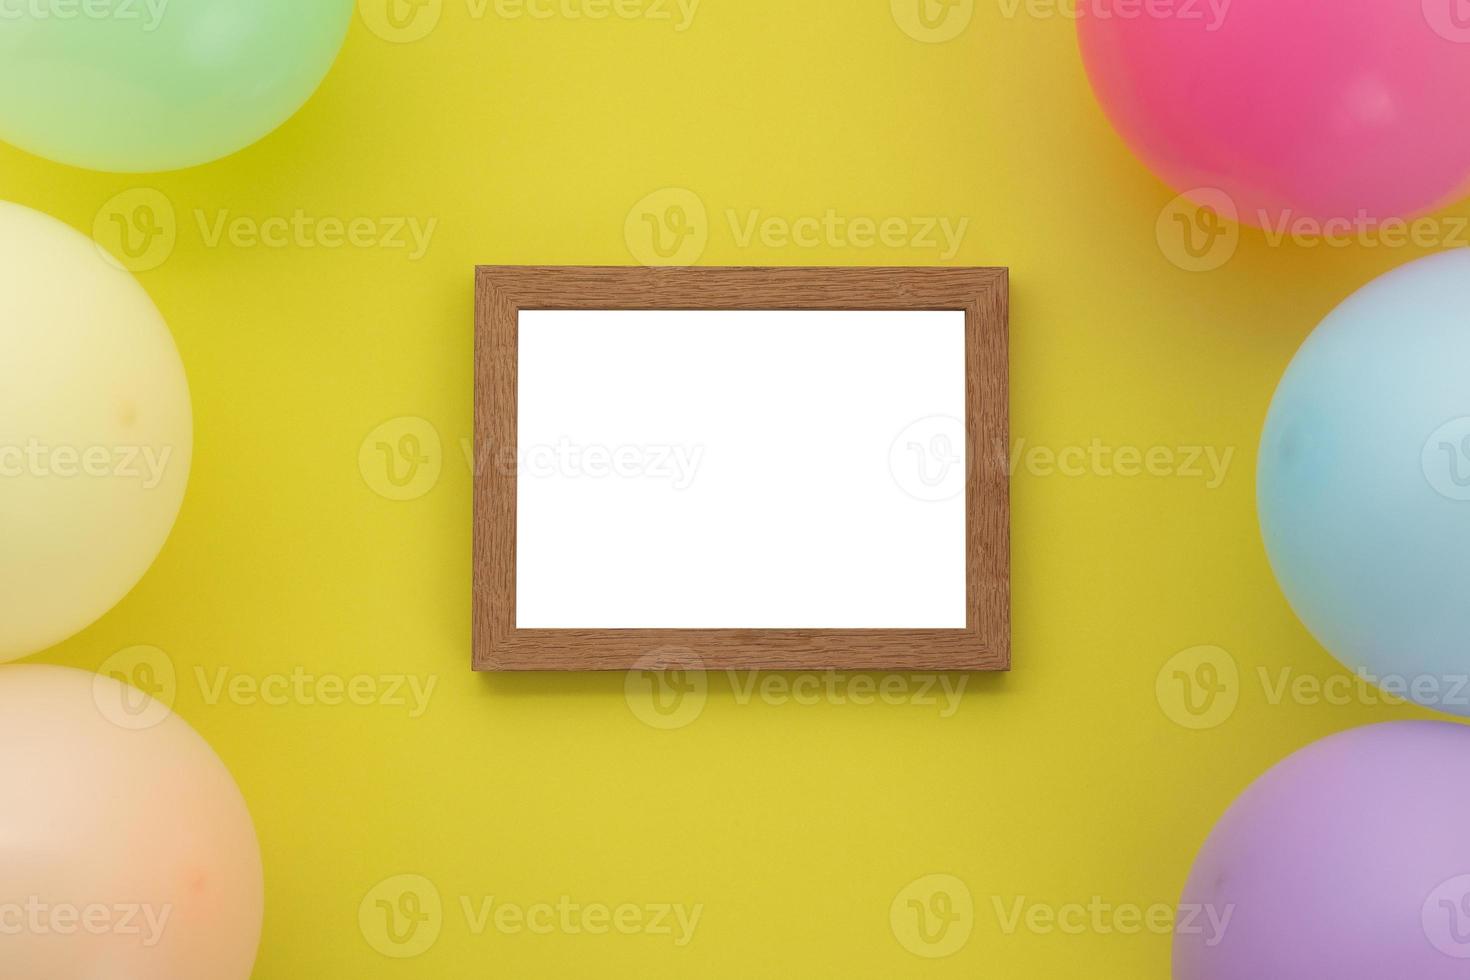 gelukkige verjaardagsachtergrond, plat liggende kleurrijke feestdecoratie met fotolijst op pastelgele achtergrond foto